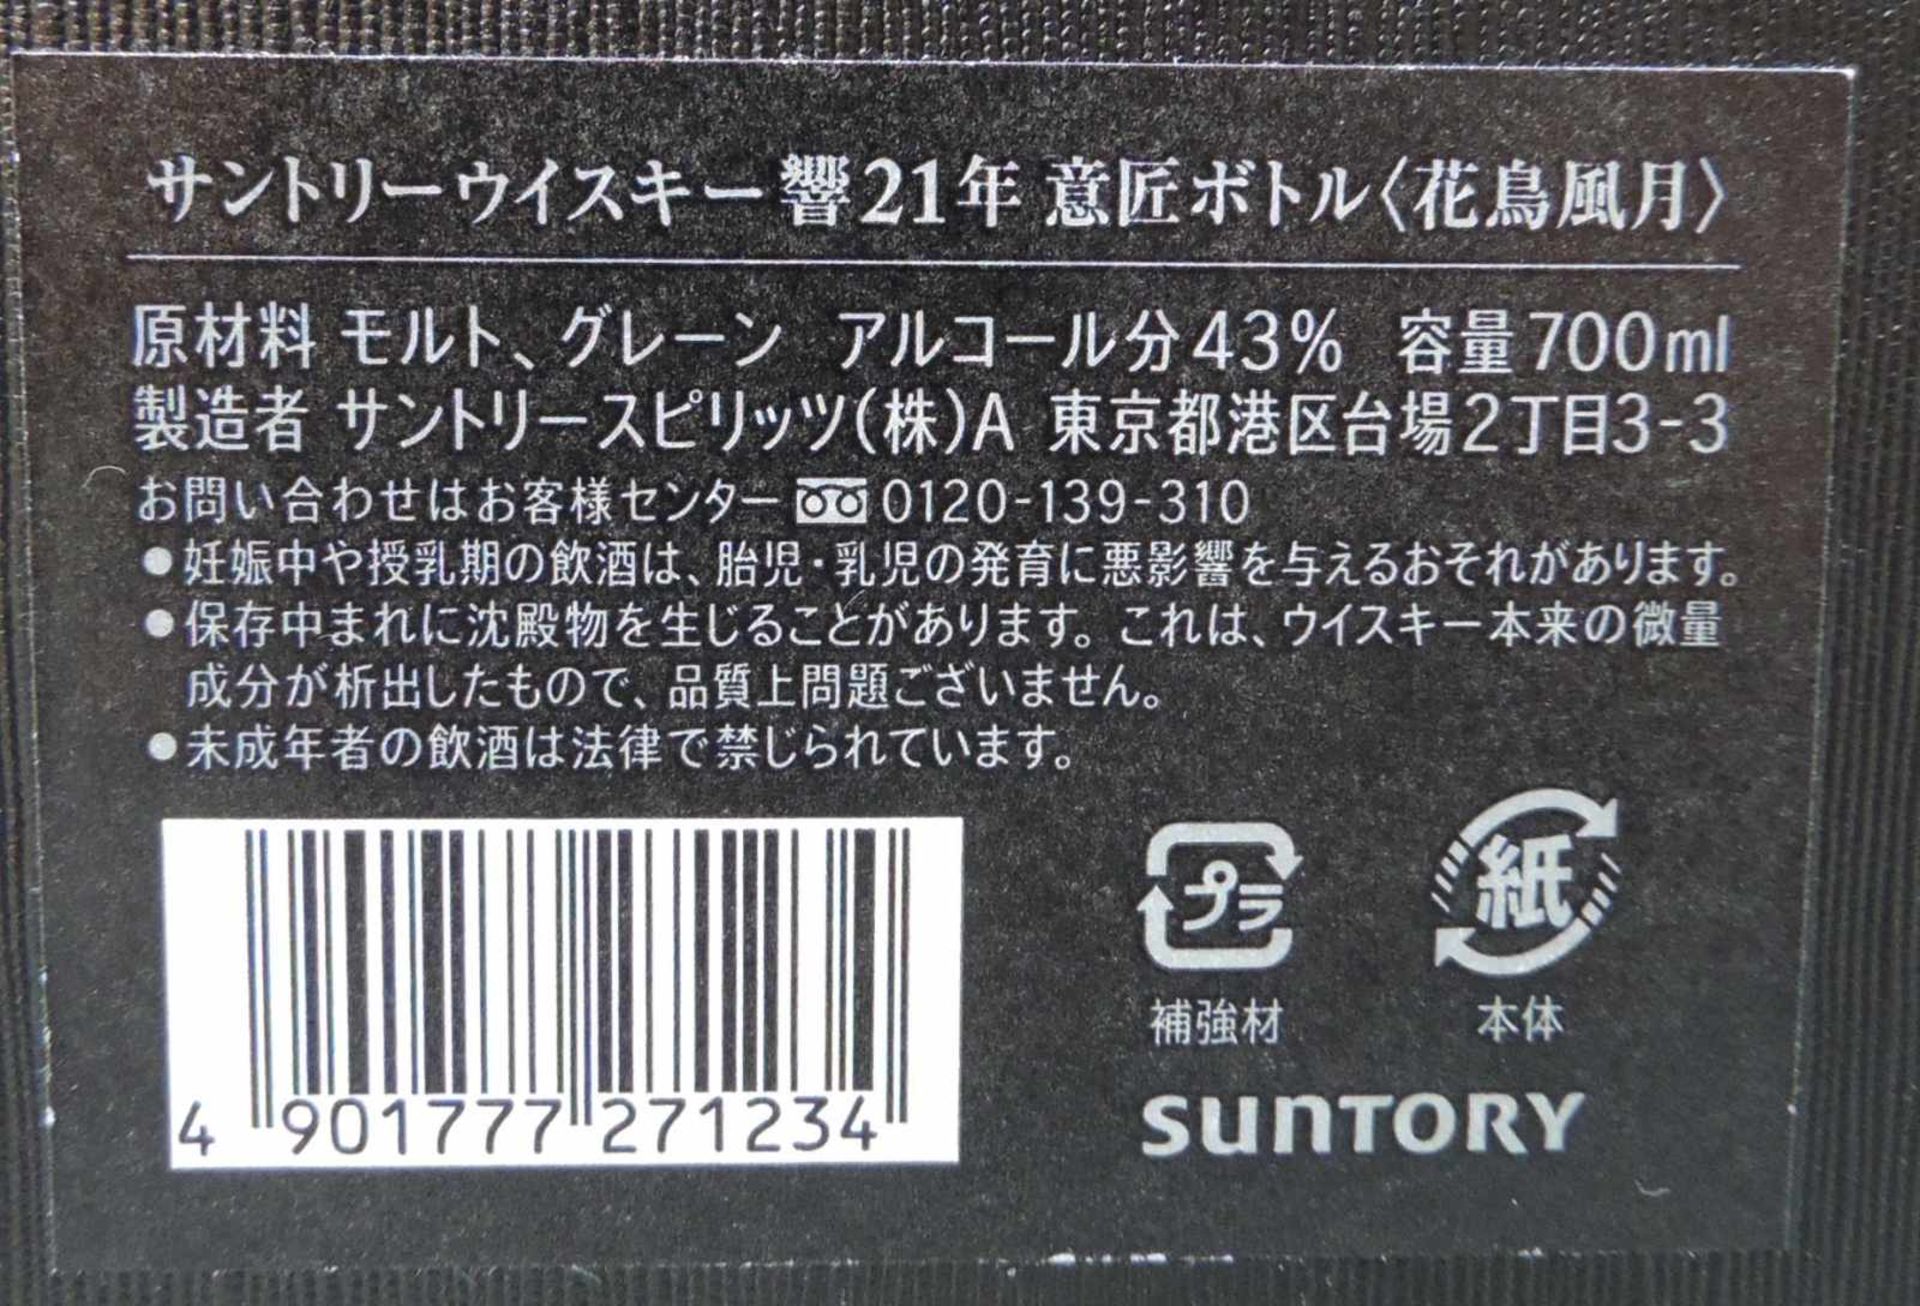 Hibiki Sutory Whiskey 21 years old. Kacho Fugetsu. Original Box. Eine ganze Flasche 700ml. Produkt - Bild 4 aus 4